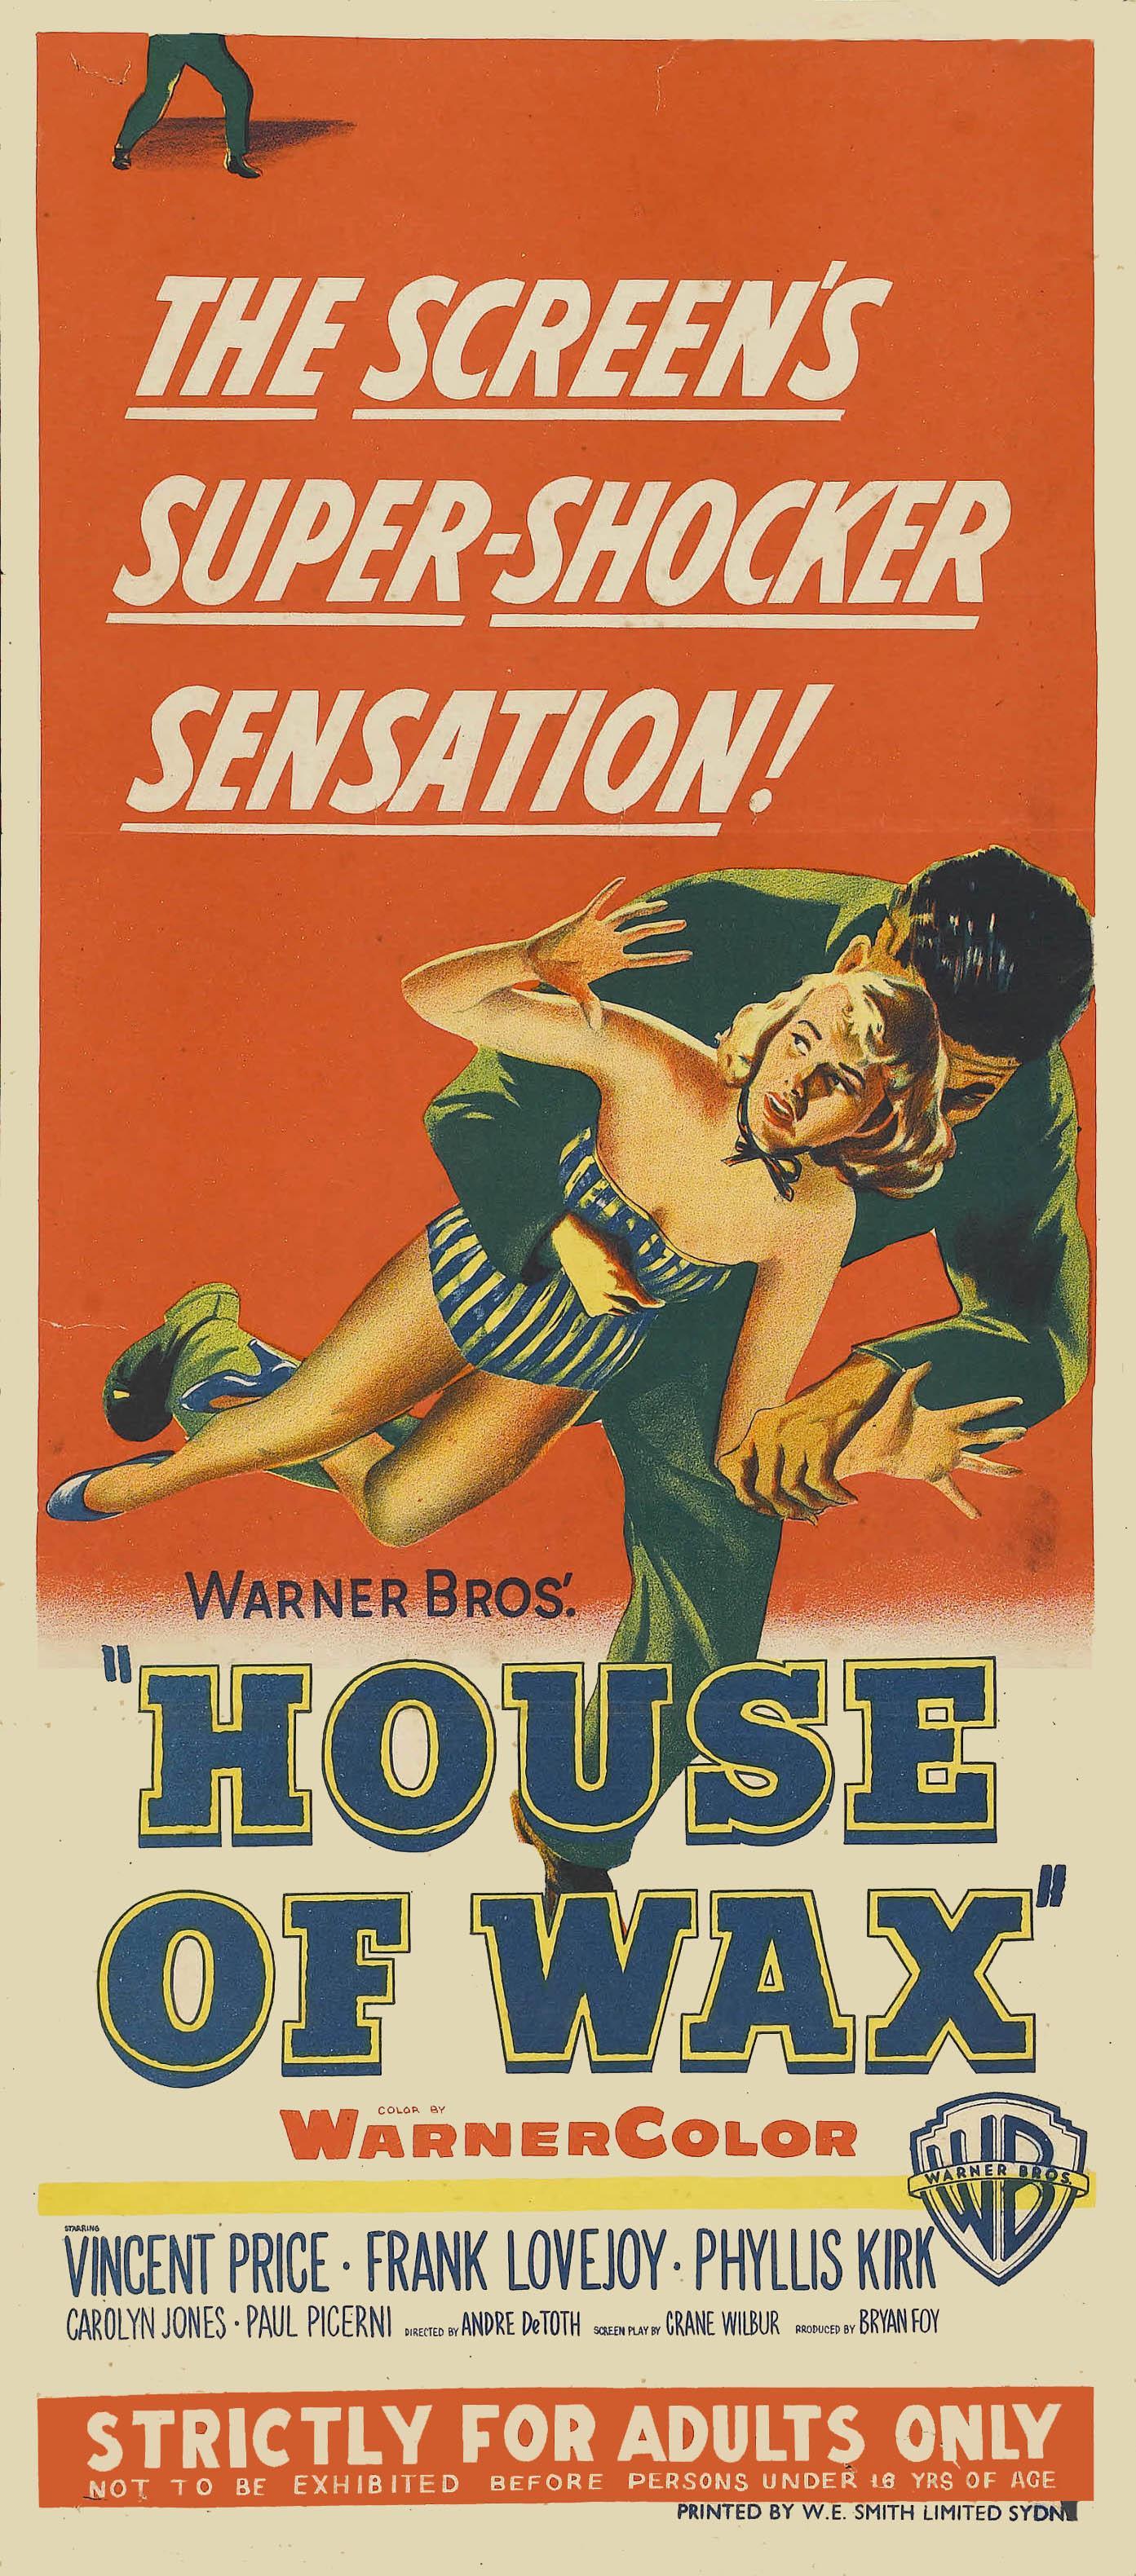 Постер фильма Музей восковых фигур | House of Wax